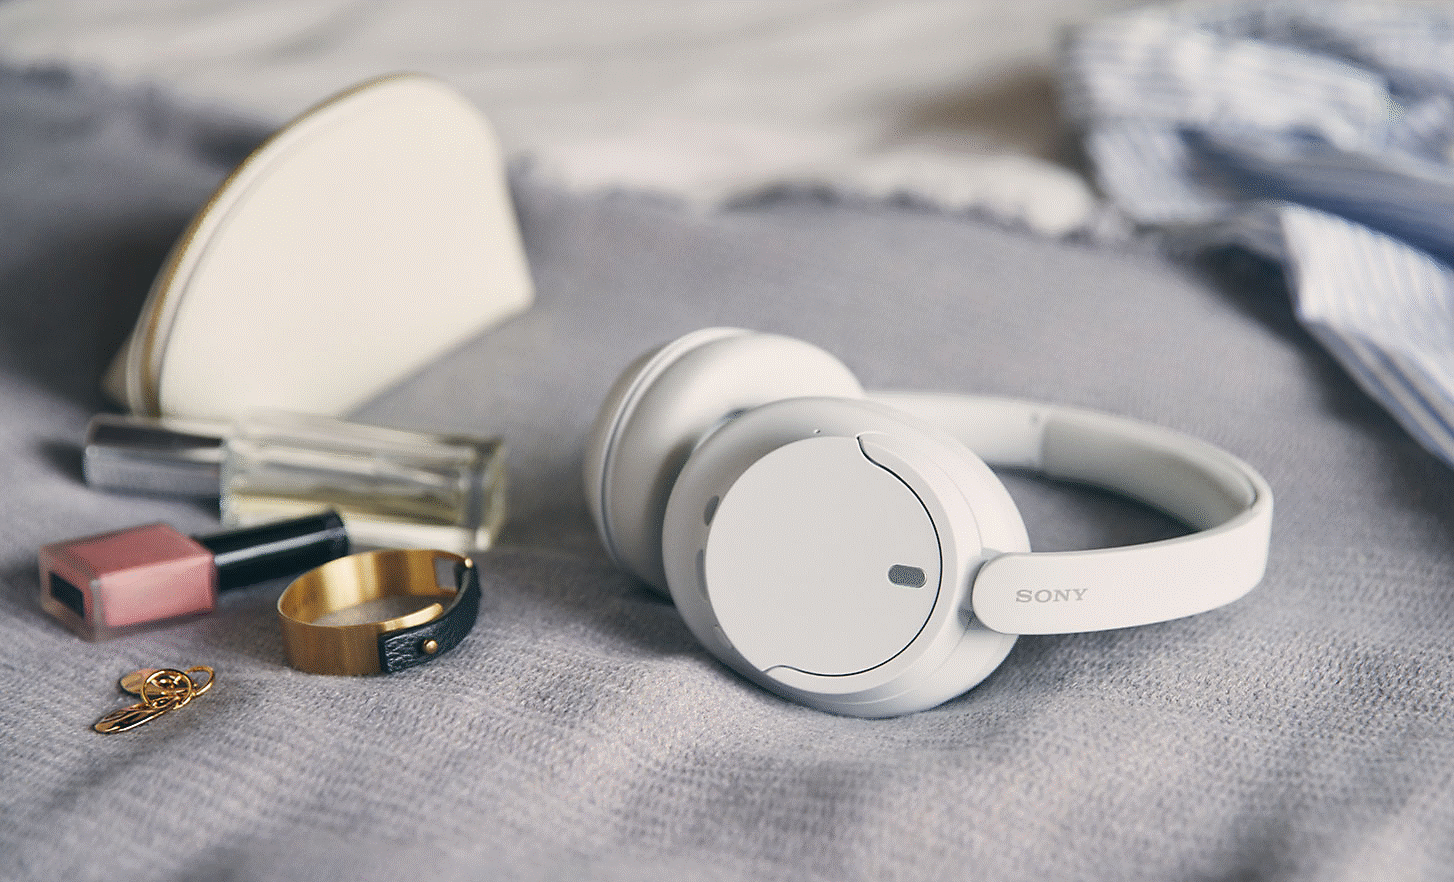 Hình ảnh cặp tai nghe Sony WH-CH720 màu trắng trên giường với một số phụ kiện